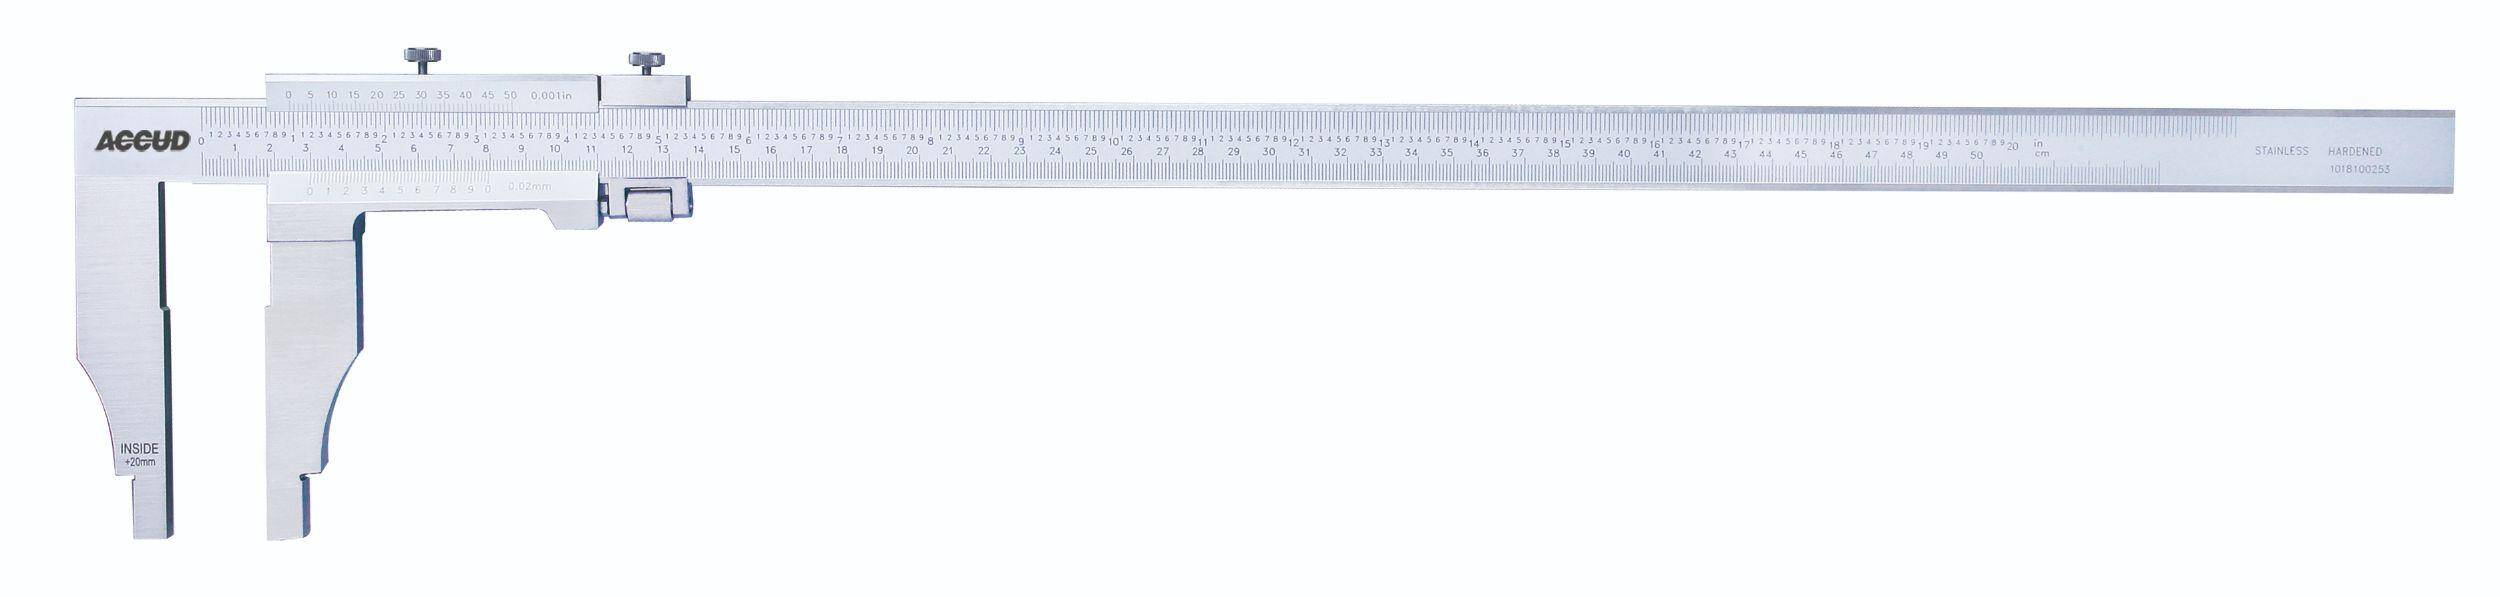 ACCUD suwmiarka analogowa 500/0.05 mm jednostronna długość szczęk 150 mm 128-020-52